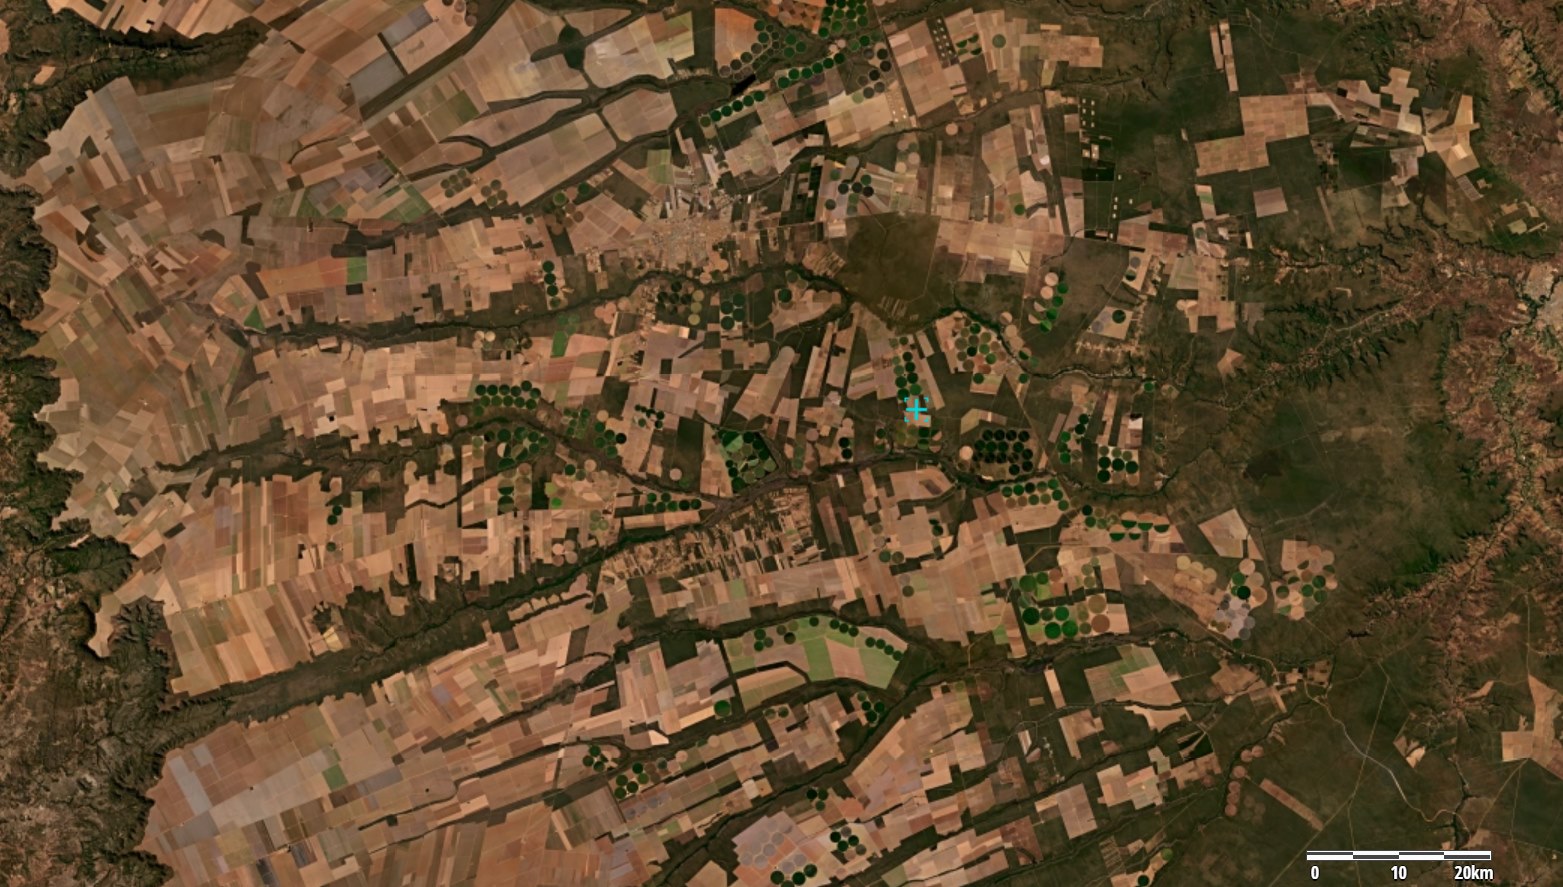 Imagens dos satélites PlanetScope, processadas no QGIS